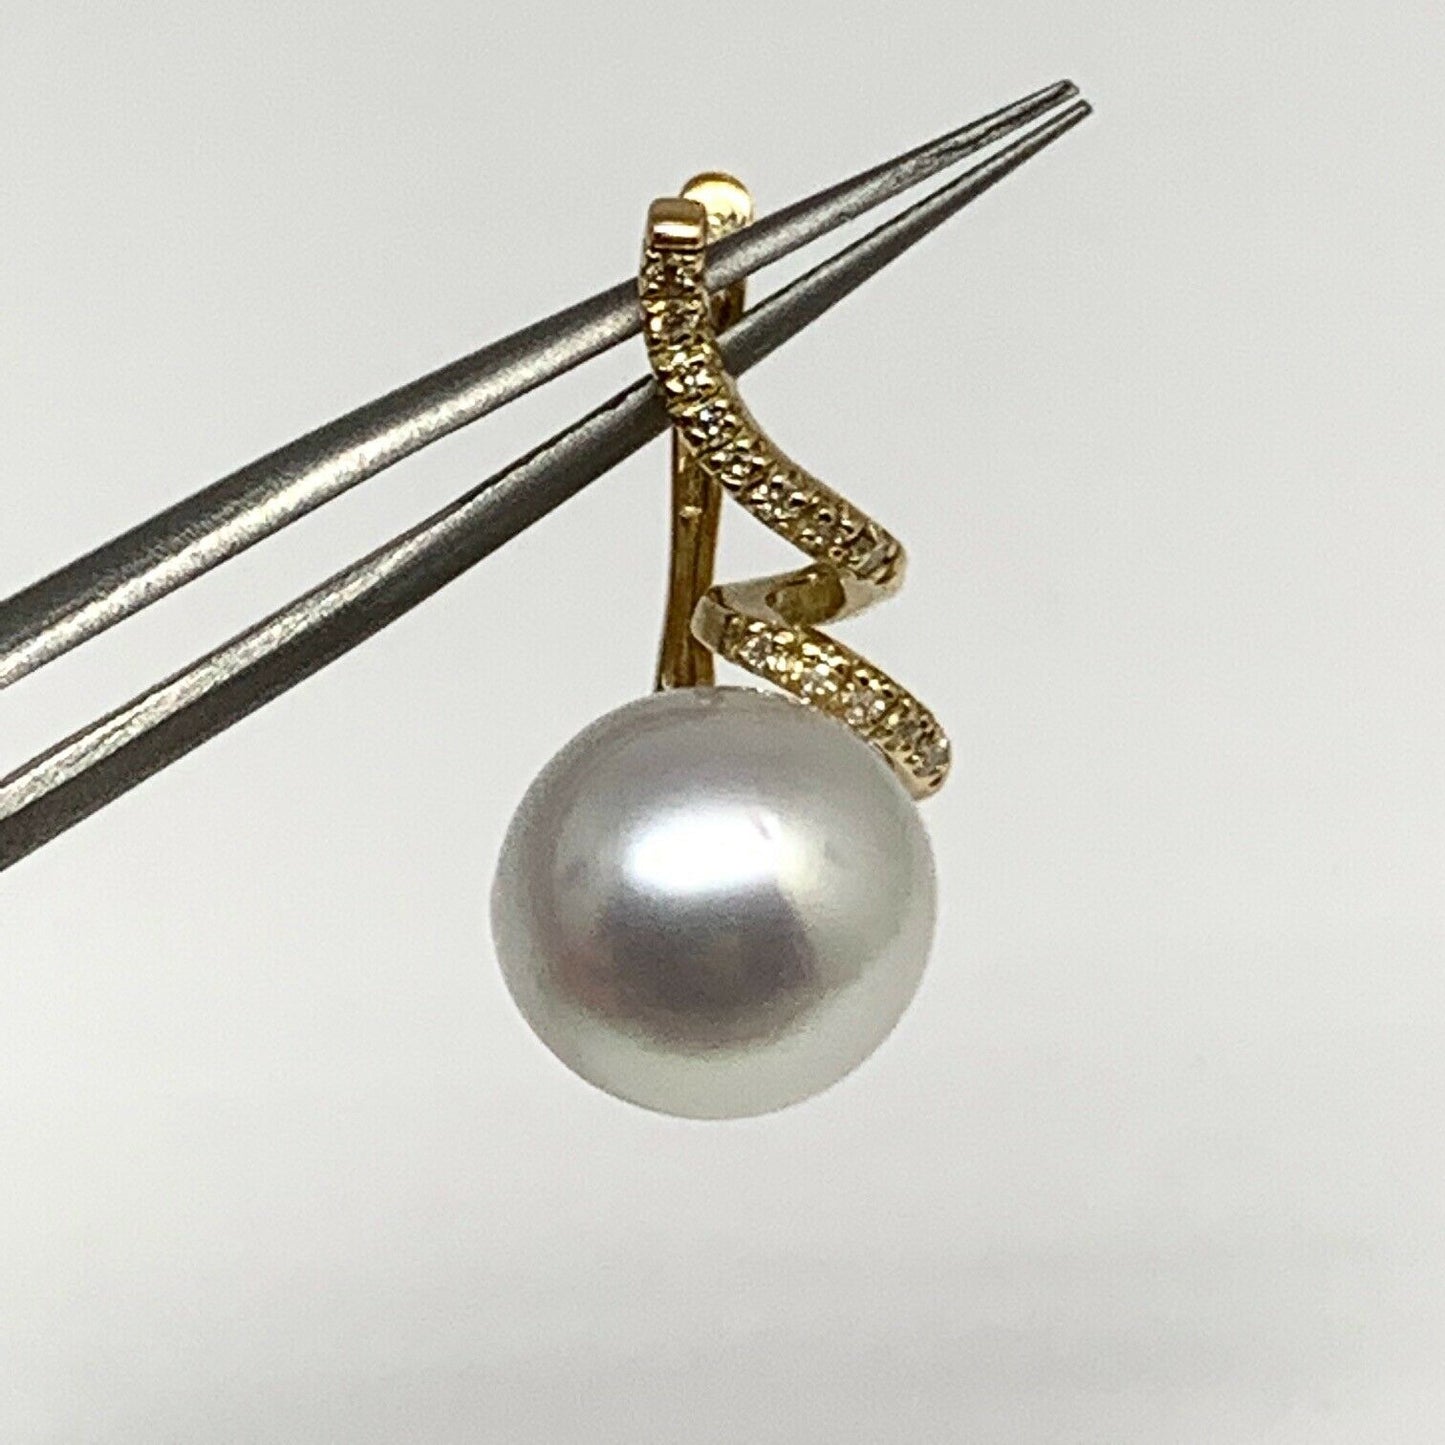 Diamond South Sea Pearl Earrings 14k Gold 11 mm Certified $2,950 910809 - Certified Estate Jewelry